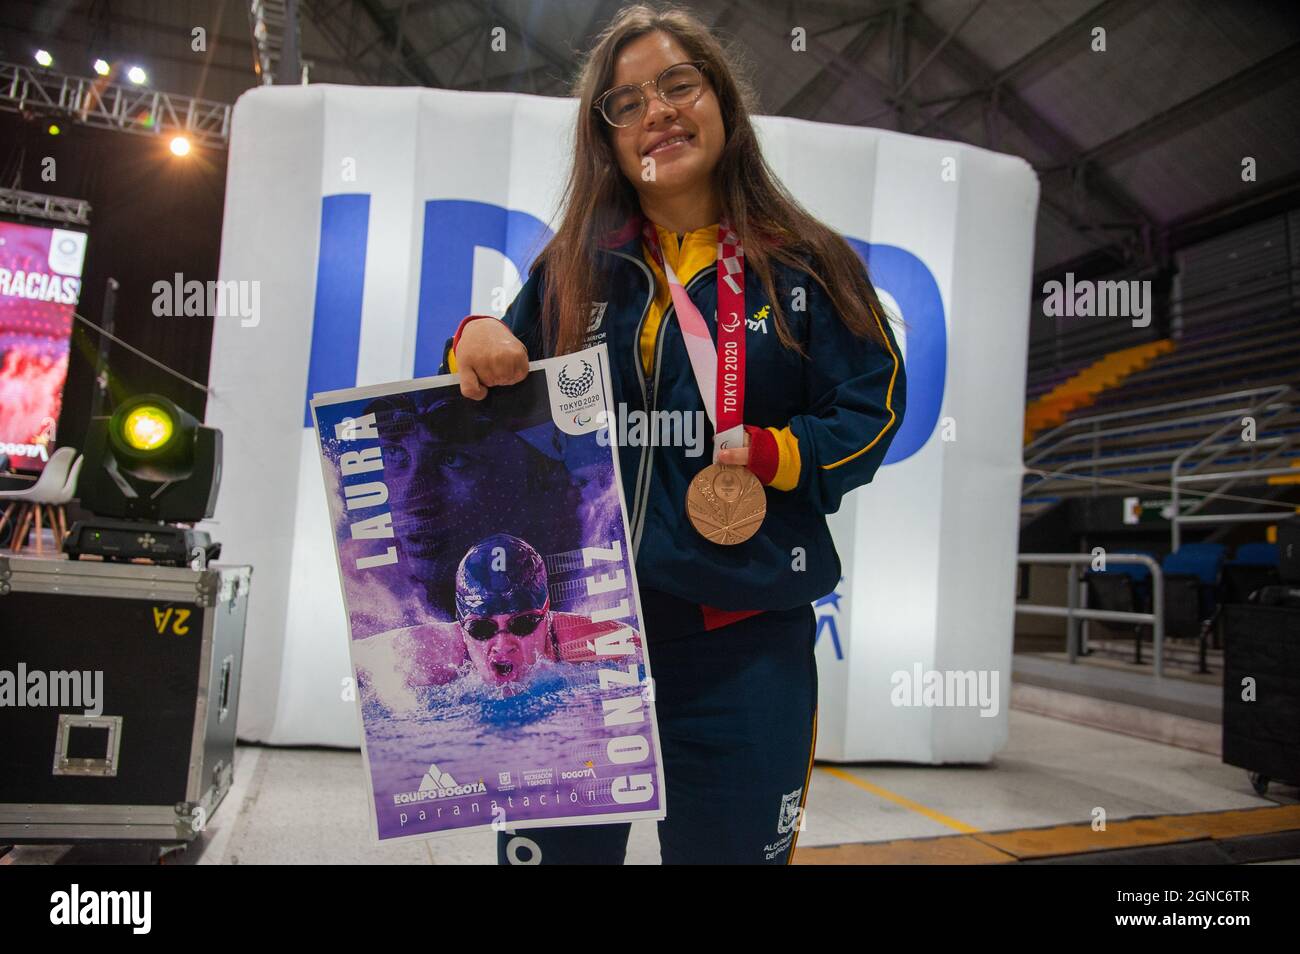 Laura Gonzalez, Schwimmen Bronzemedaille posiert für ein Foto mit ihrer Paralympischen Bronzemedaille während einer Begrüßung der kolumbianischen Paralympischen Athleten Th Stockfoto